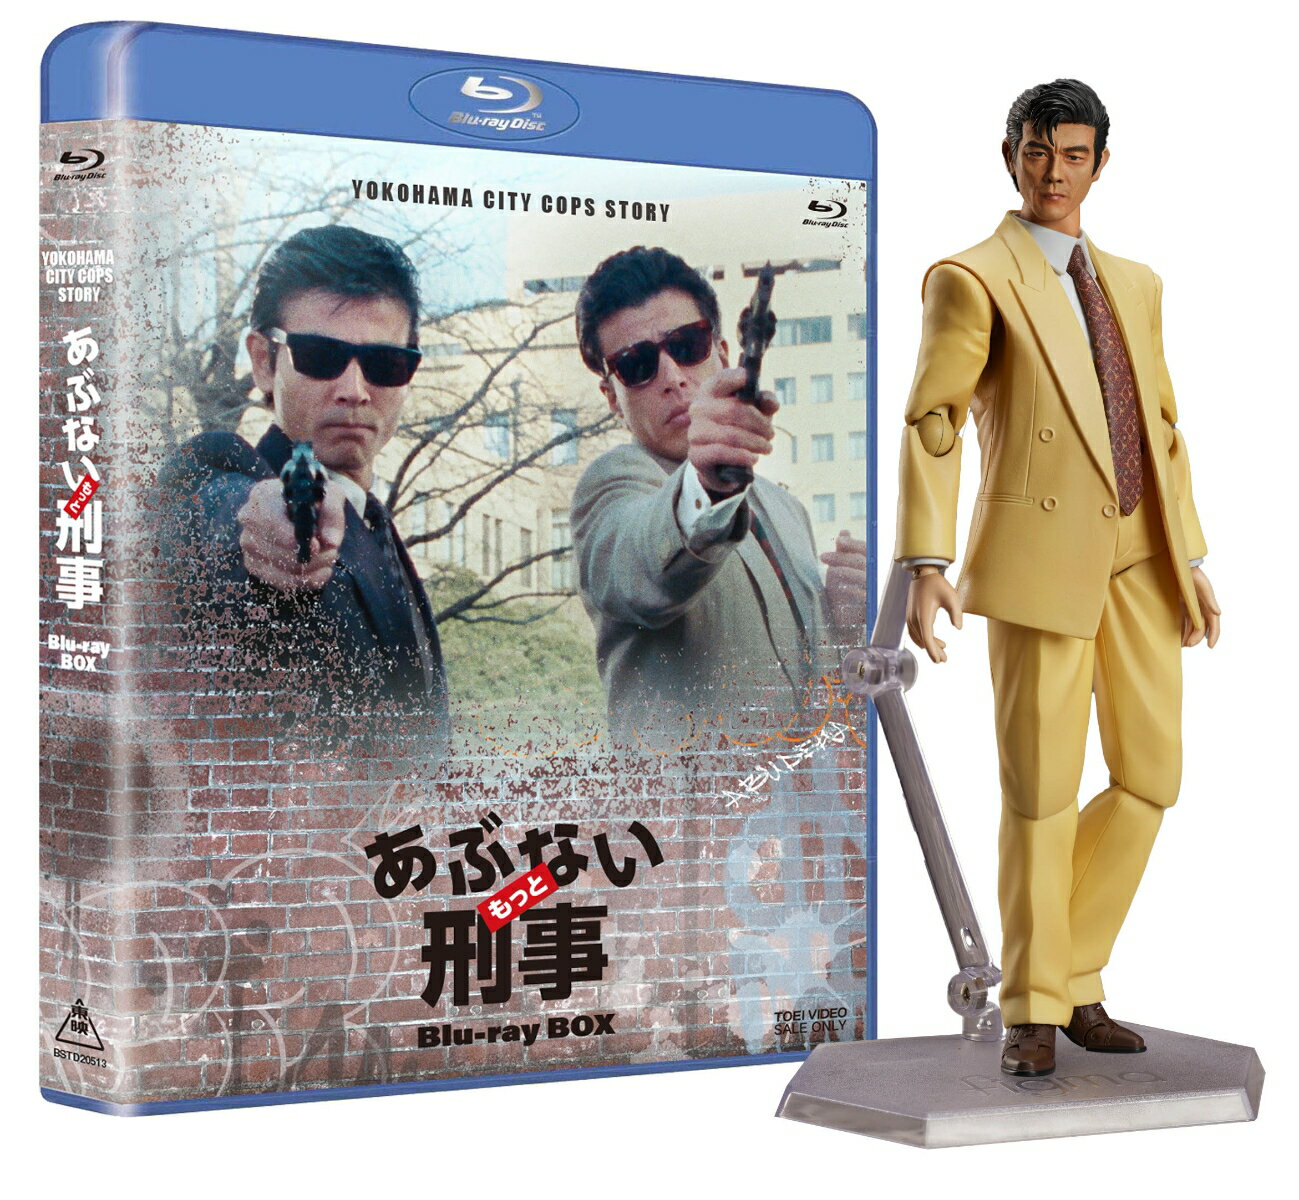 もっとあぶない刑事 Blu-ray BOX ユージフィギュア付き【Blu-ray】